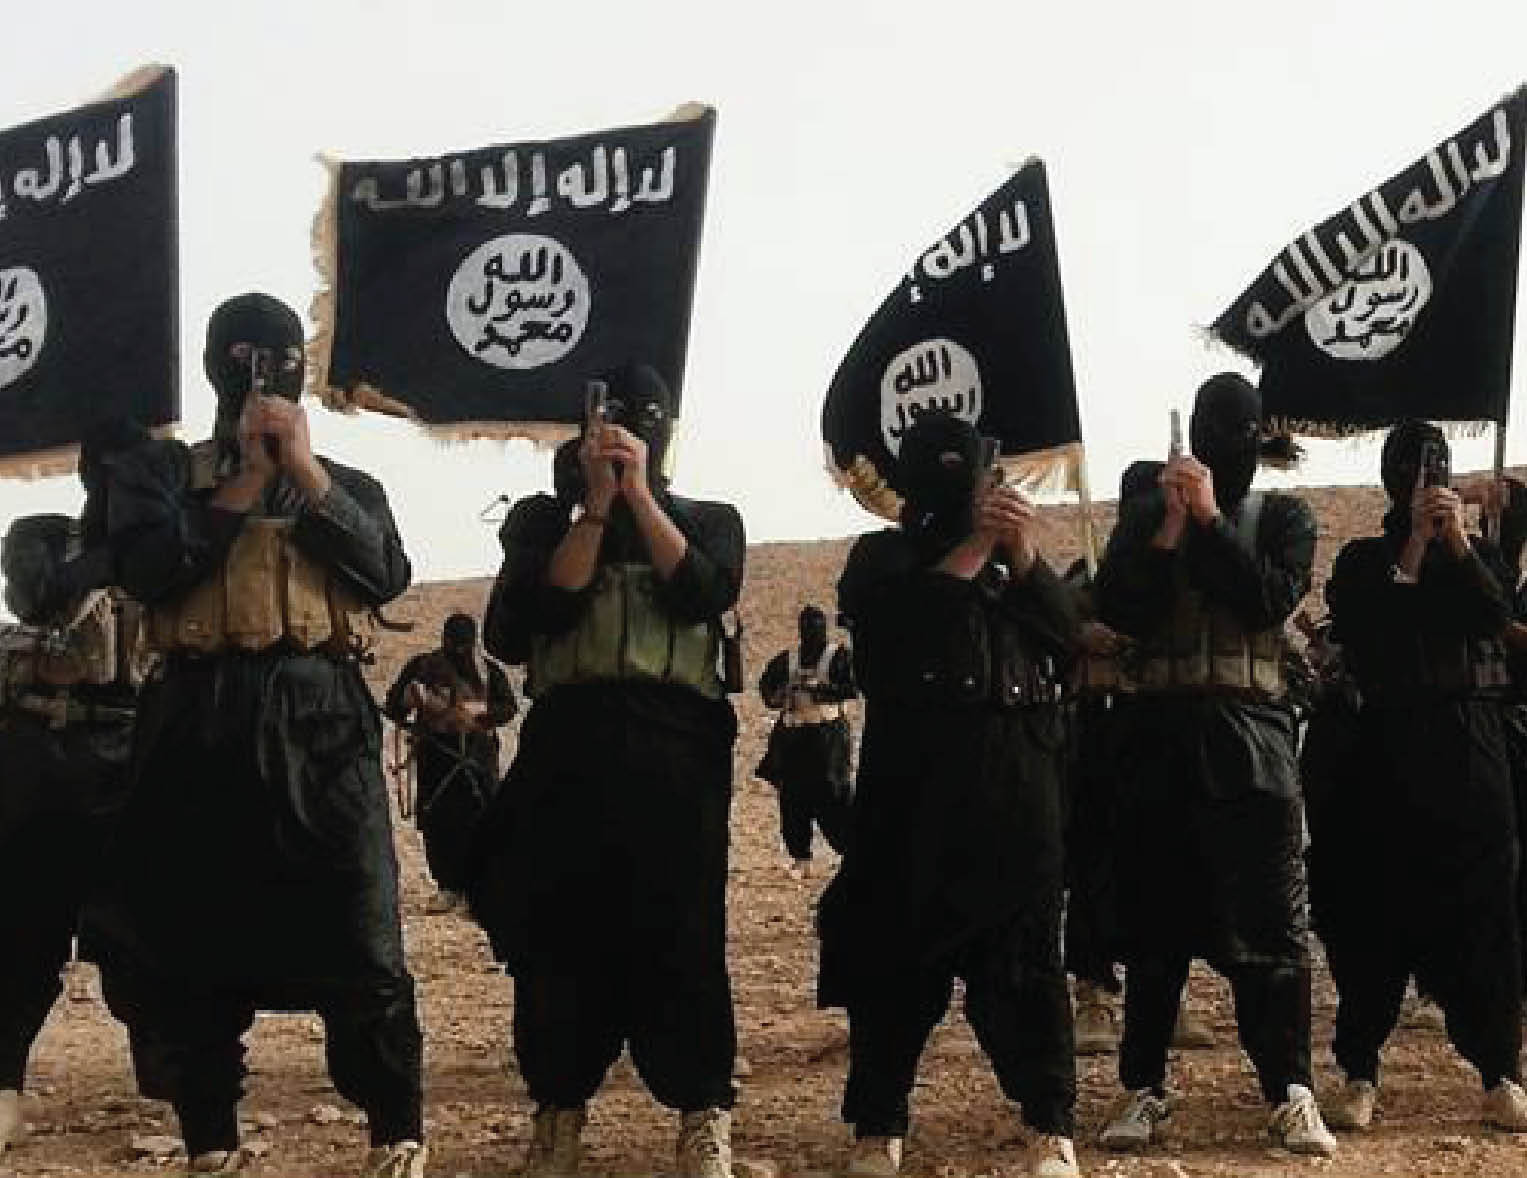 صحف الصباح:60 في المائة من مقاتلي داعش يفرون..والسلطات المغربية متأهبة